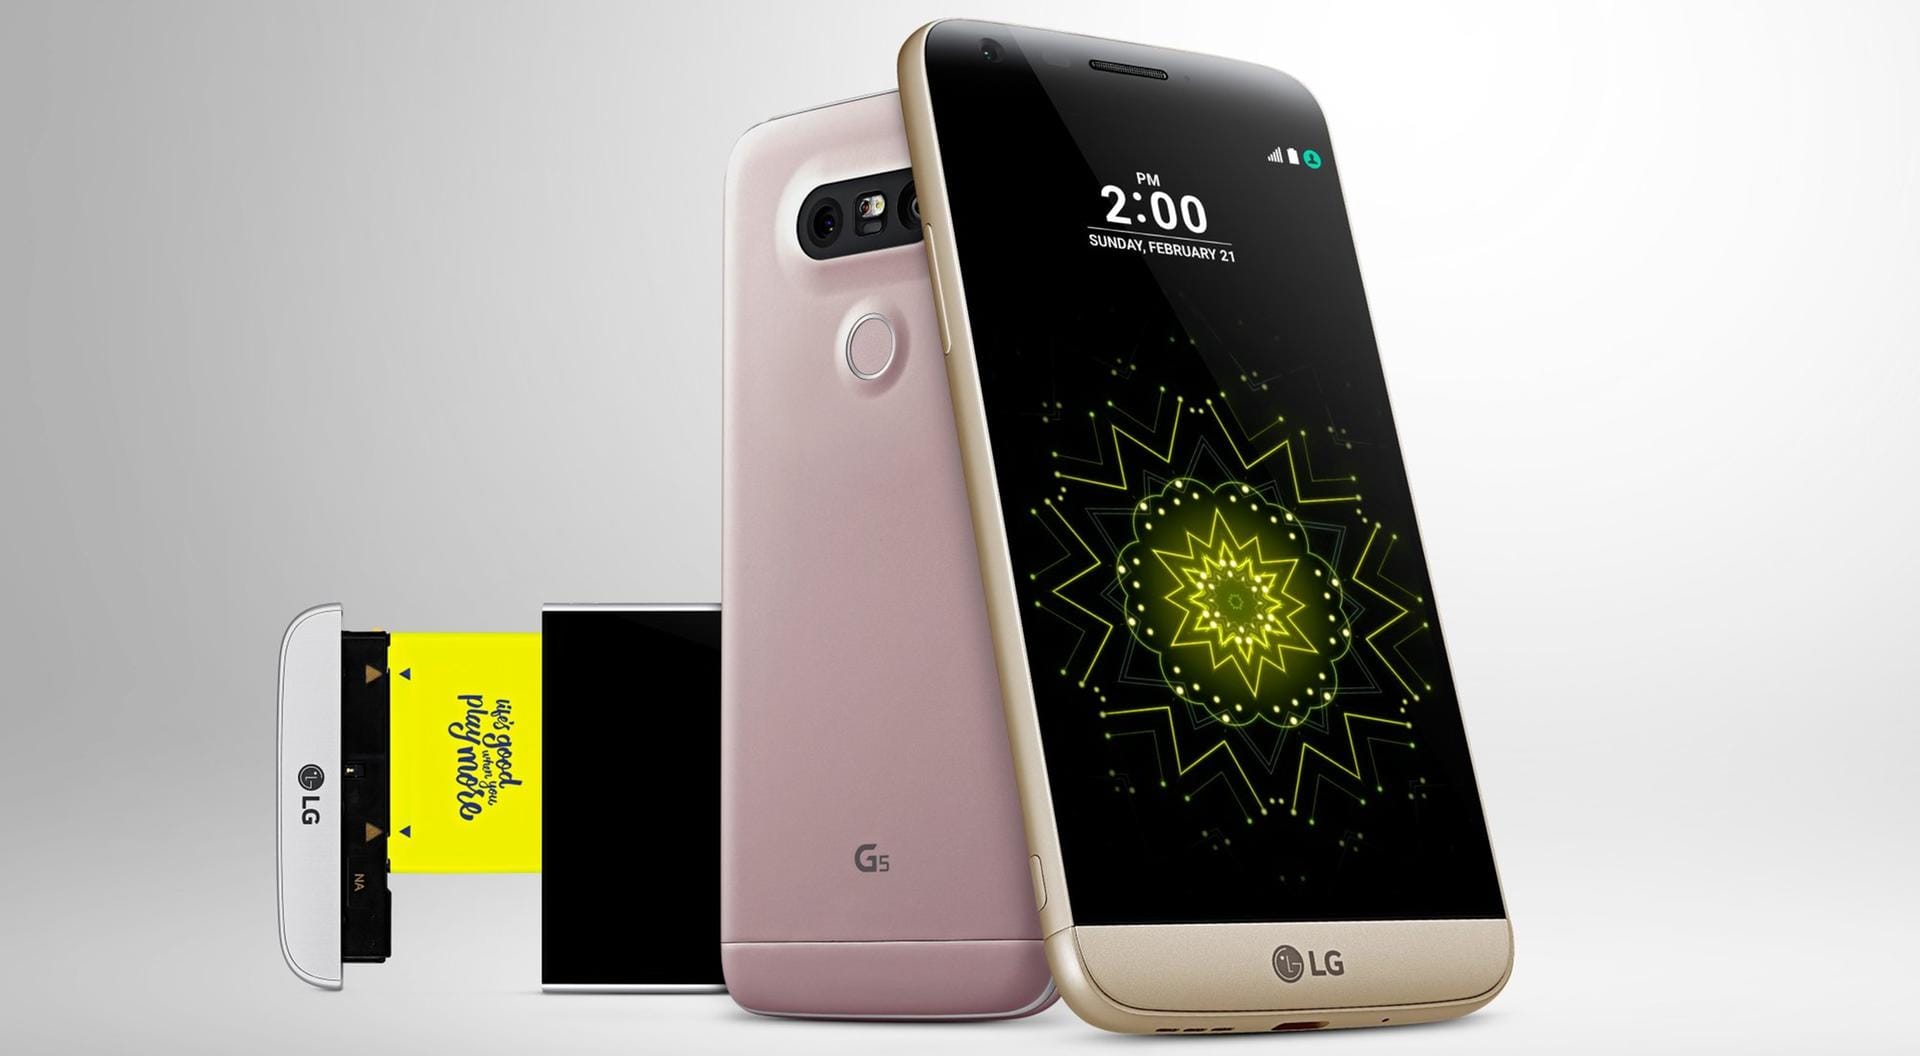 Das LG G5 ist ein aktuelles High-End-Smartphone zum Schnäppchenpreis.